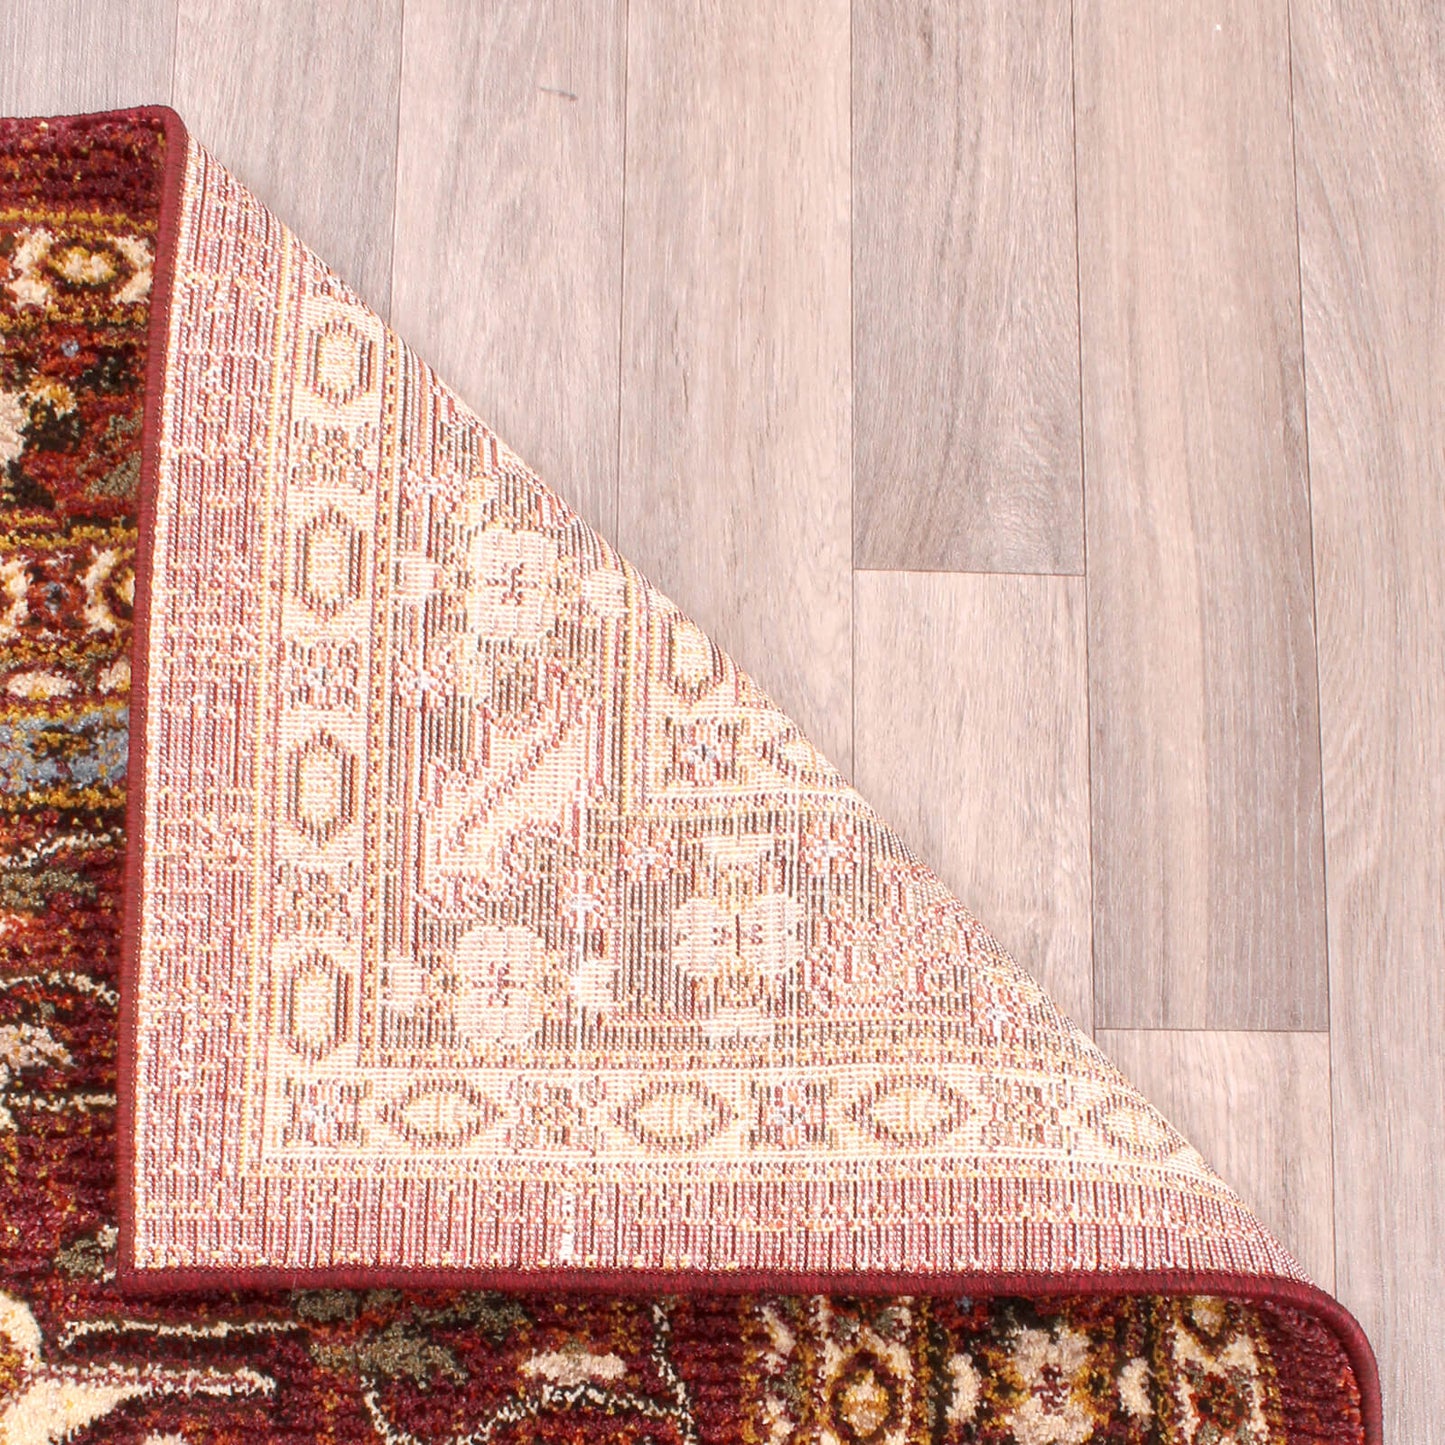 Handmade Carpets Cashmere 5570 Red Rug